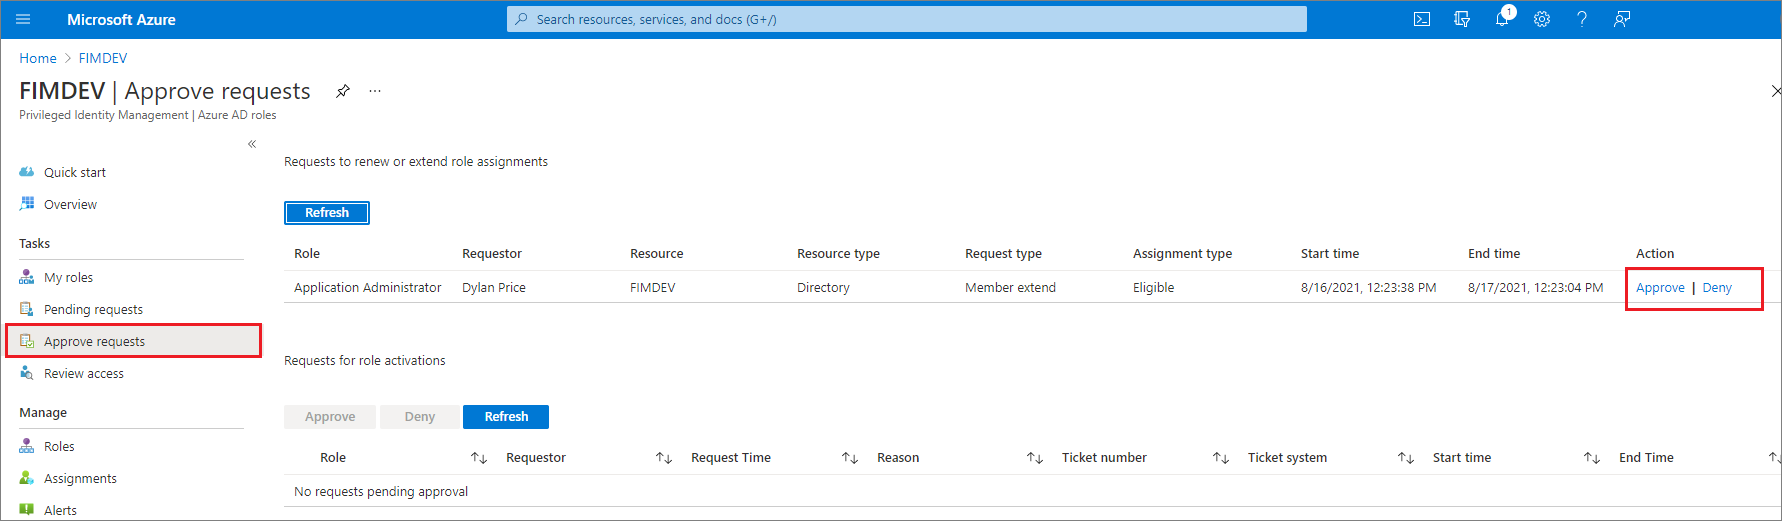 Captura de pantalla que muestra la página de aprobación de solicitudes de roles de Microsoft Entra que muestra solicitudes y vínculos para aprobar o denegar.